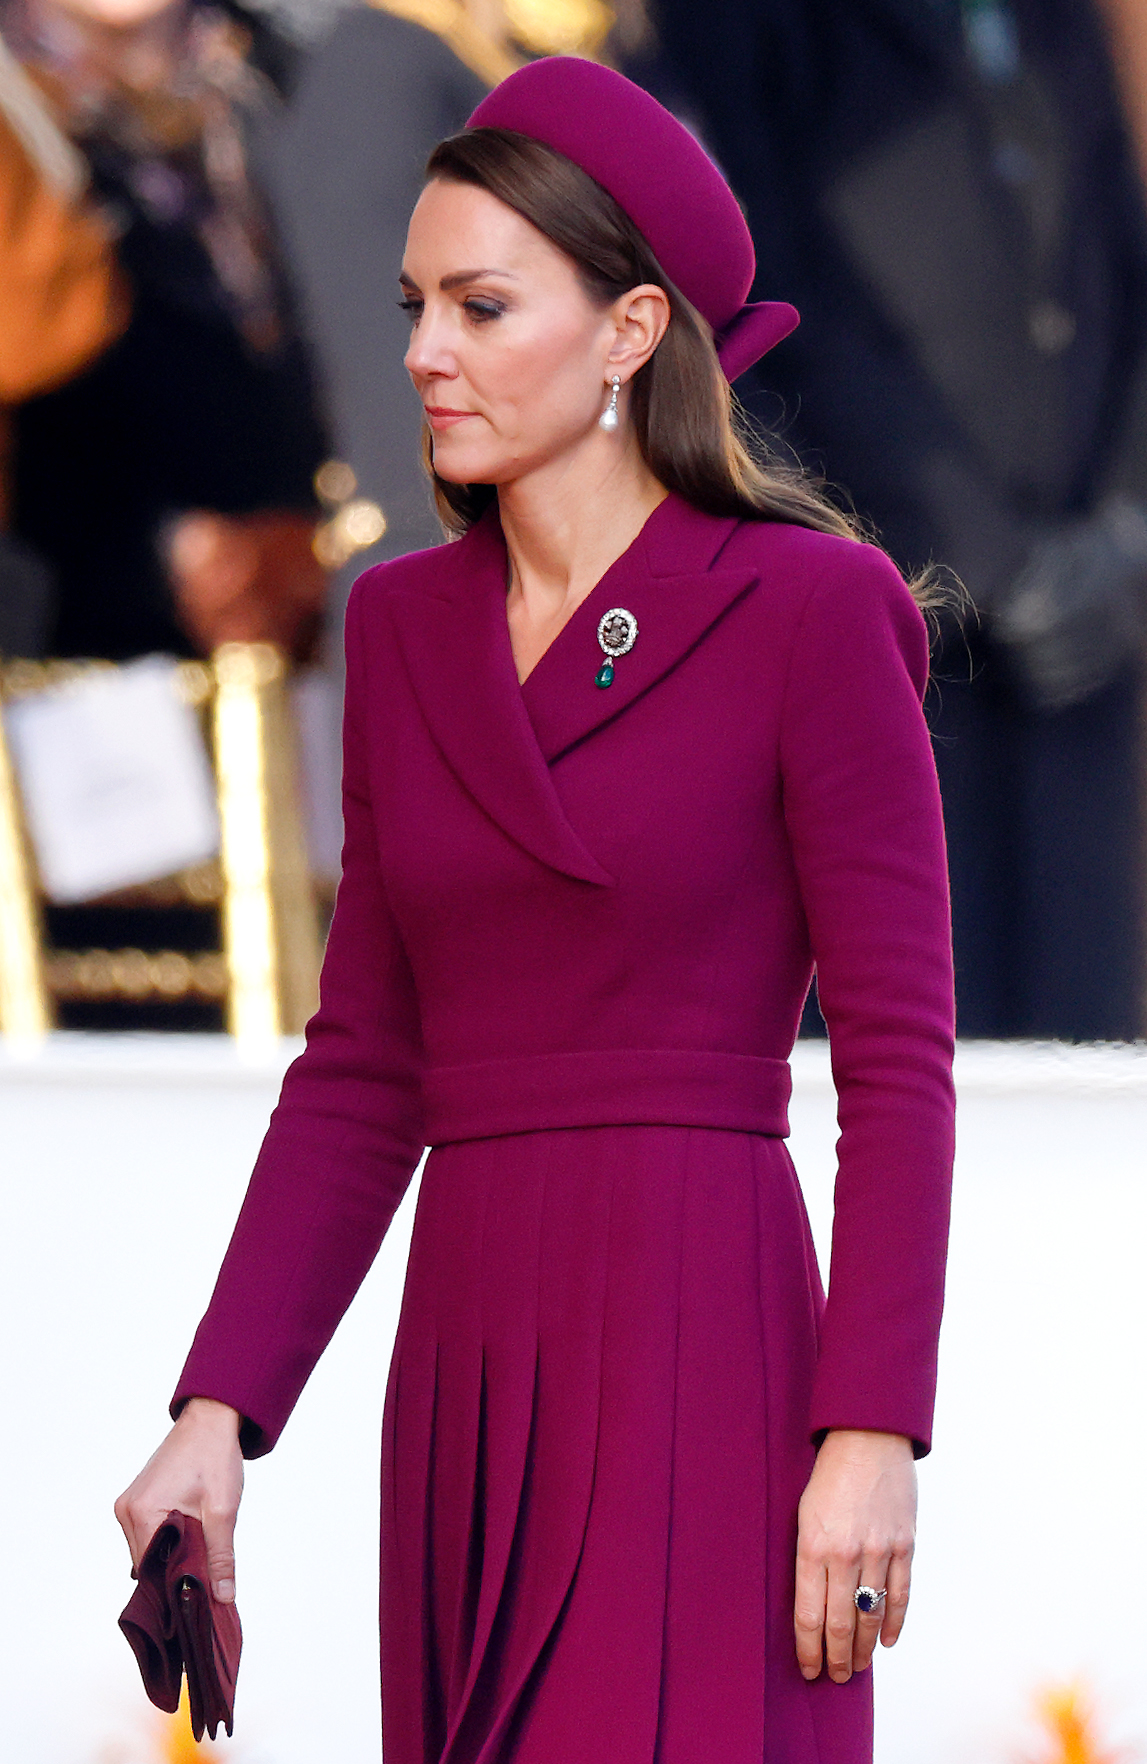 La princesse Catherine lors de la cérémonie de bienvenue à Horse Guards Parade pour le président Cyril Ramaphosa au premier jour de sa visite d'État au Royaume-Uni, le 22 novembre 2022 à Londres, Angleterre | Source : Getty Images